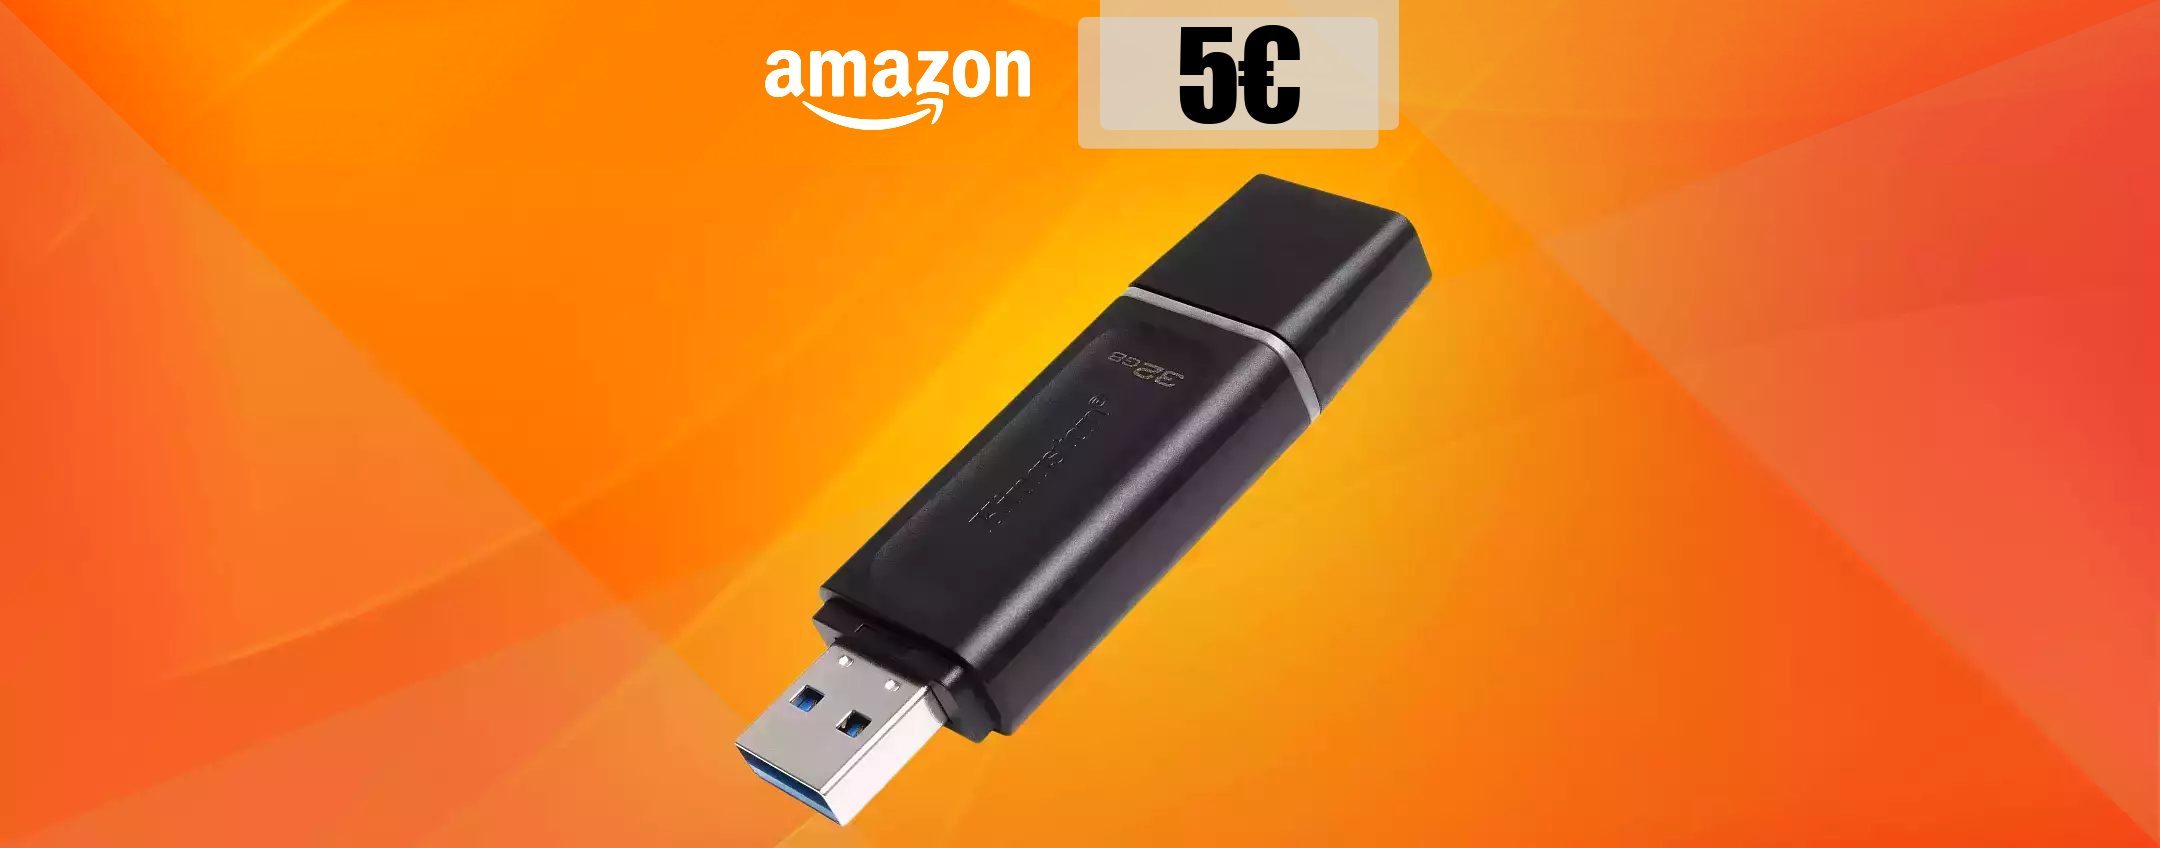 Chiavetta USB 32GB a soli 5€: ERRORE di prezzo o MAXI offerta?